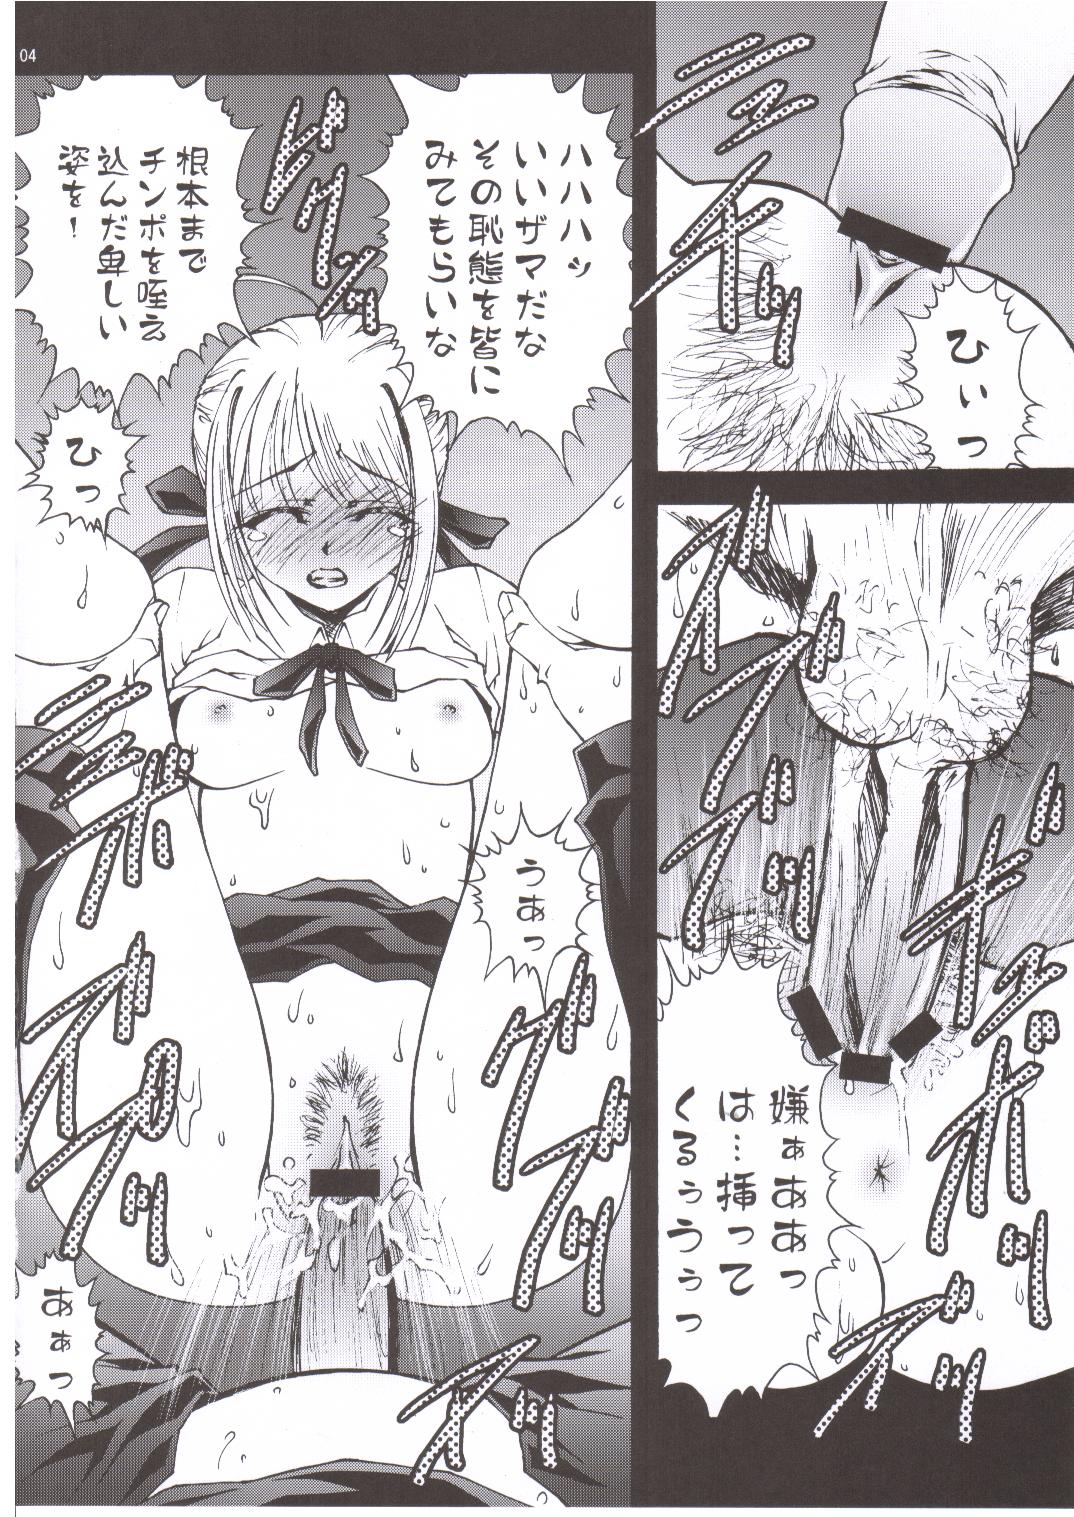 [GPX (Aizawa Tetora)] Tenbatsu (Fate/stay night) page 4 full